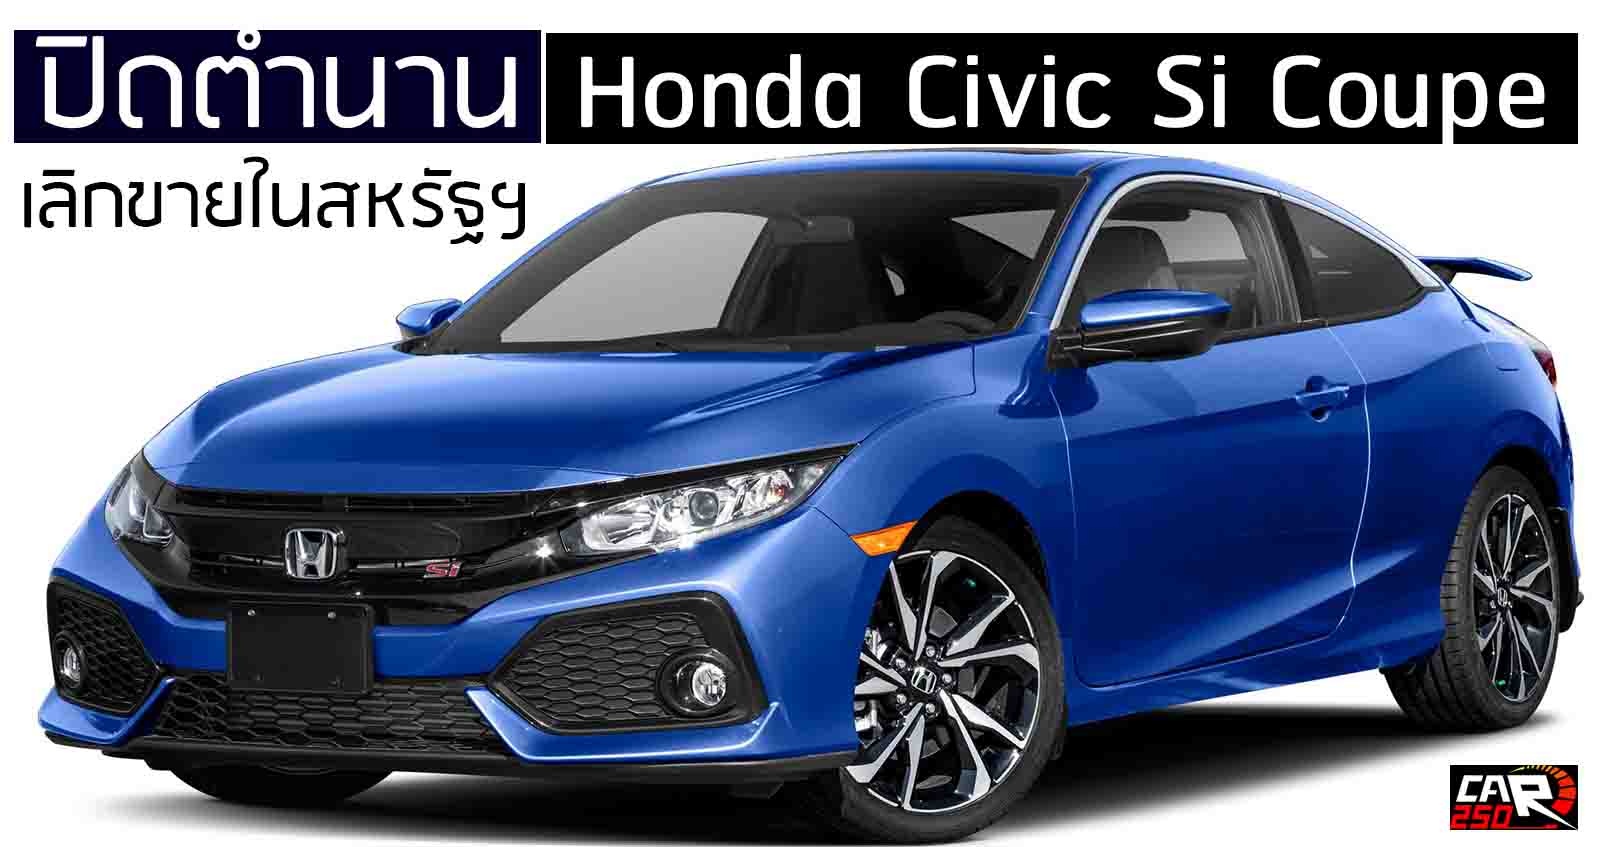 ปิดตำนาน Honda Civic Si Coupe เลิกขายในสหรัฐฯ